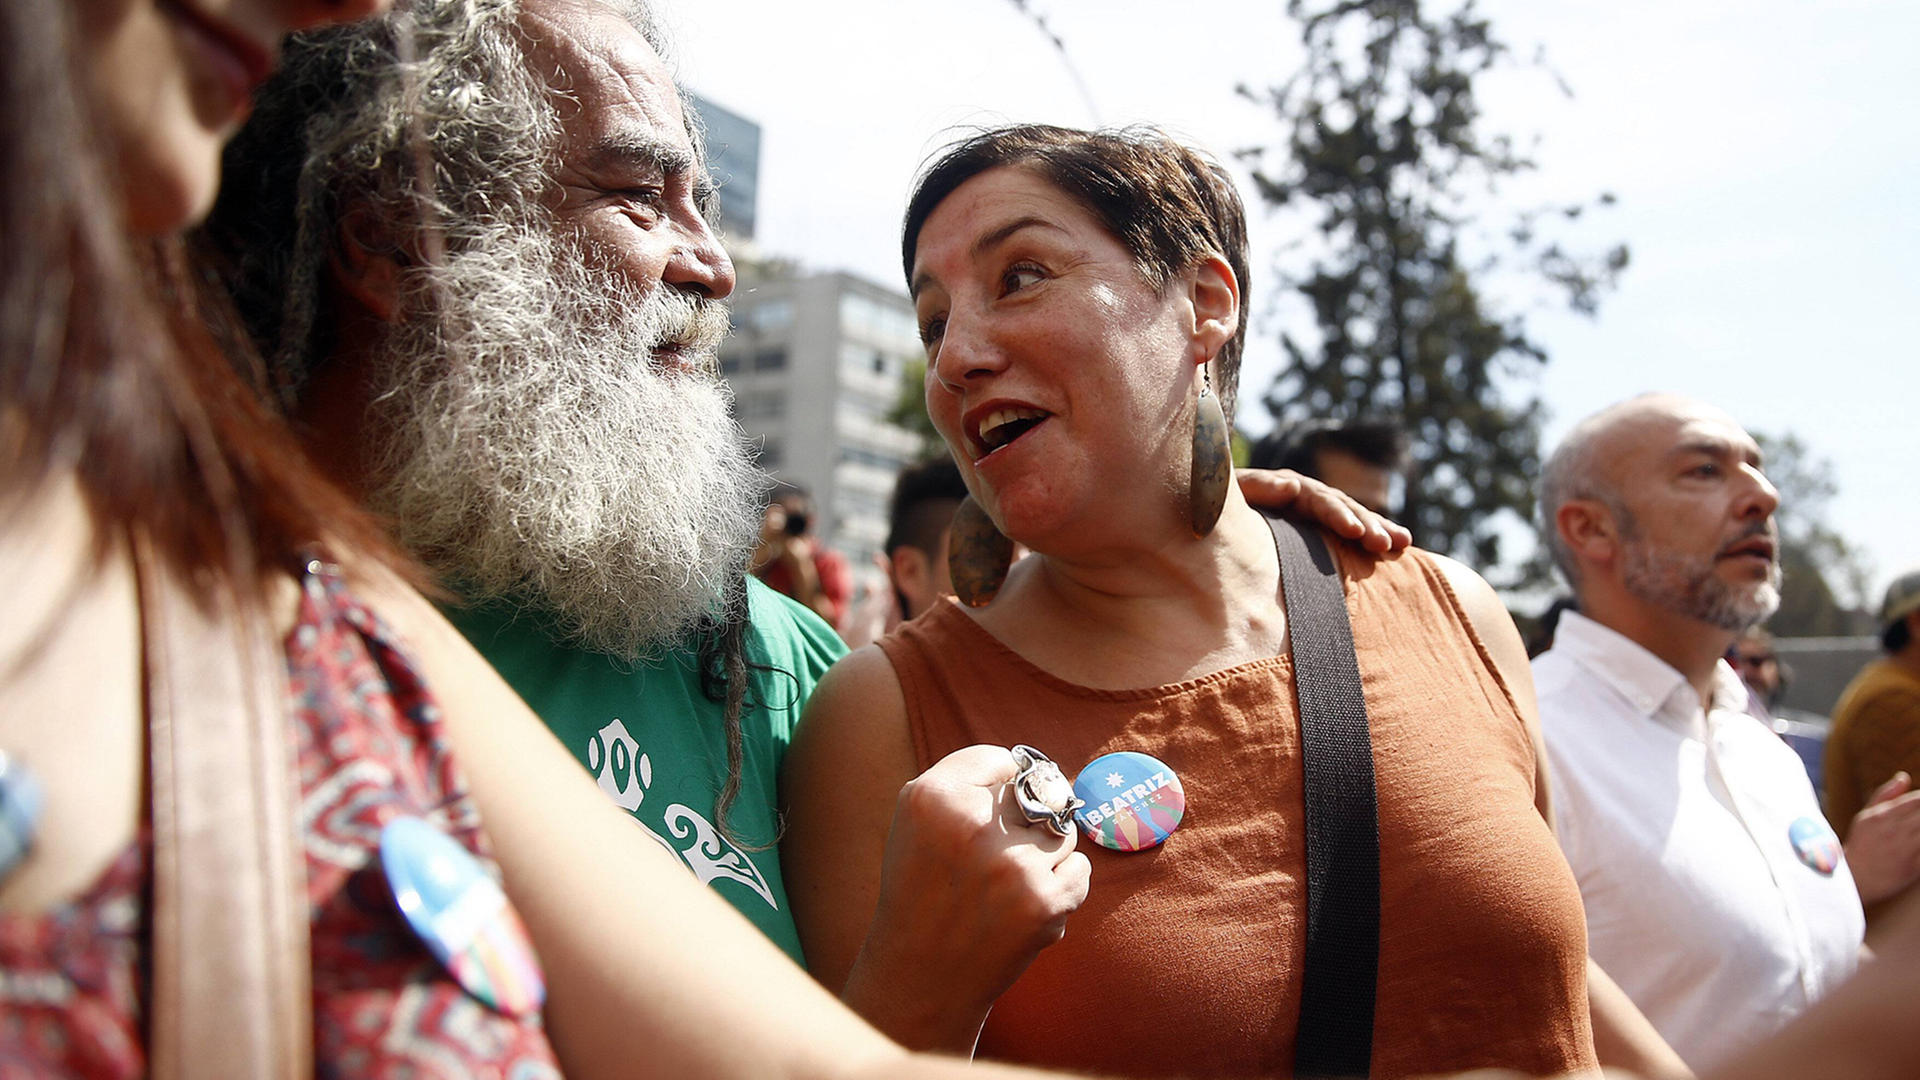 Beatriz Sanchez bewirbt sich als Kandidatin der neuen Bewegung Frente Amplio für die chilenische Präsidentschaftswahl im November